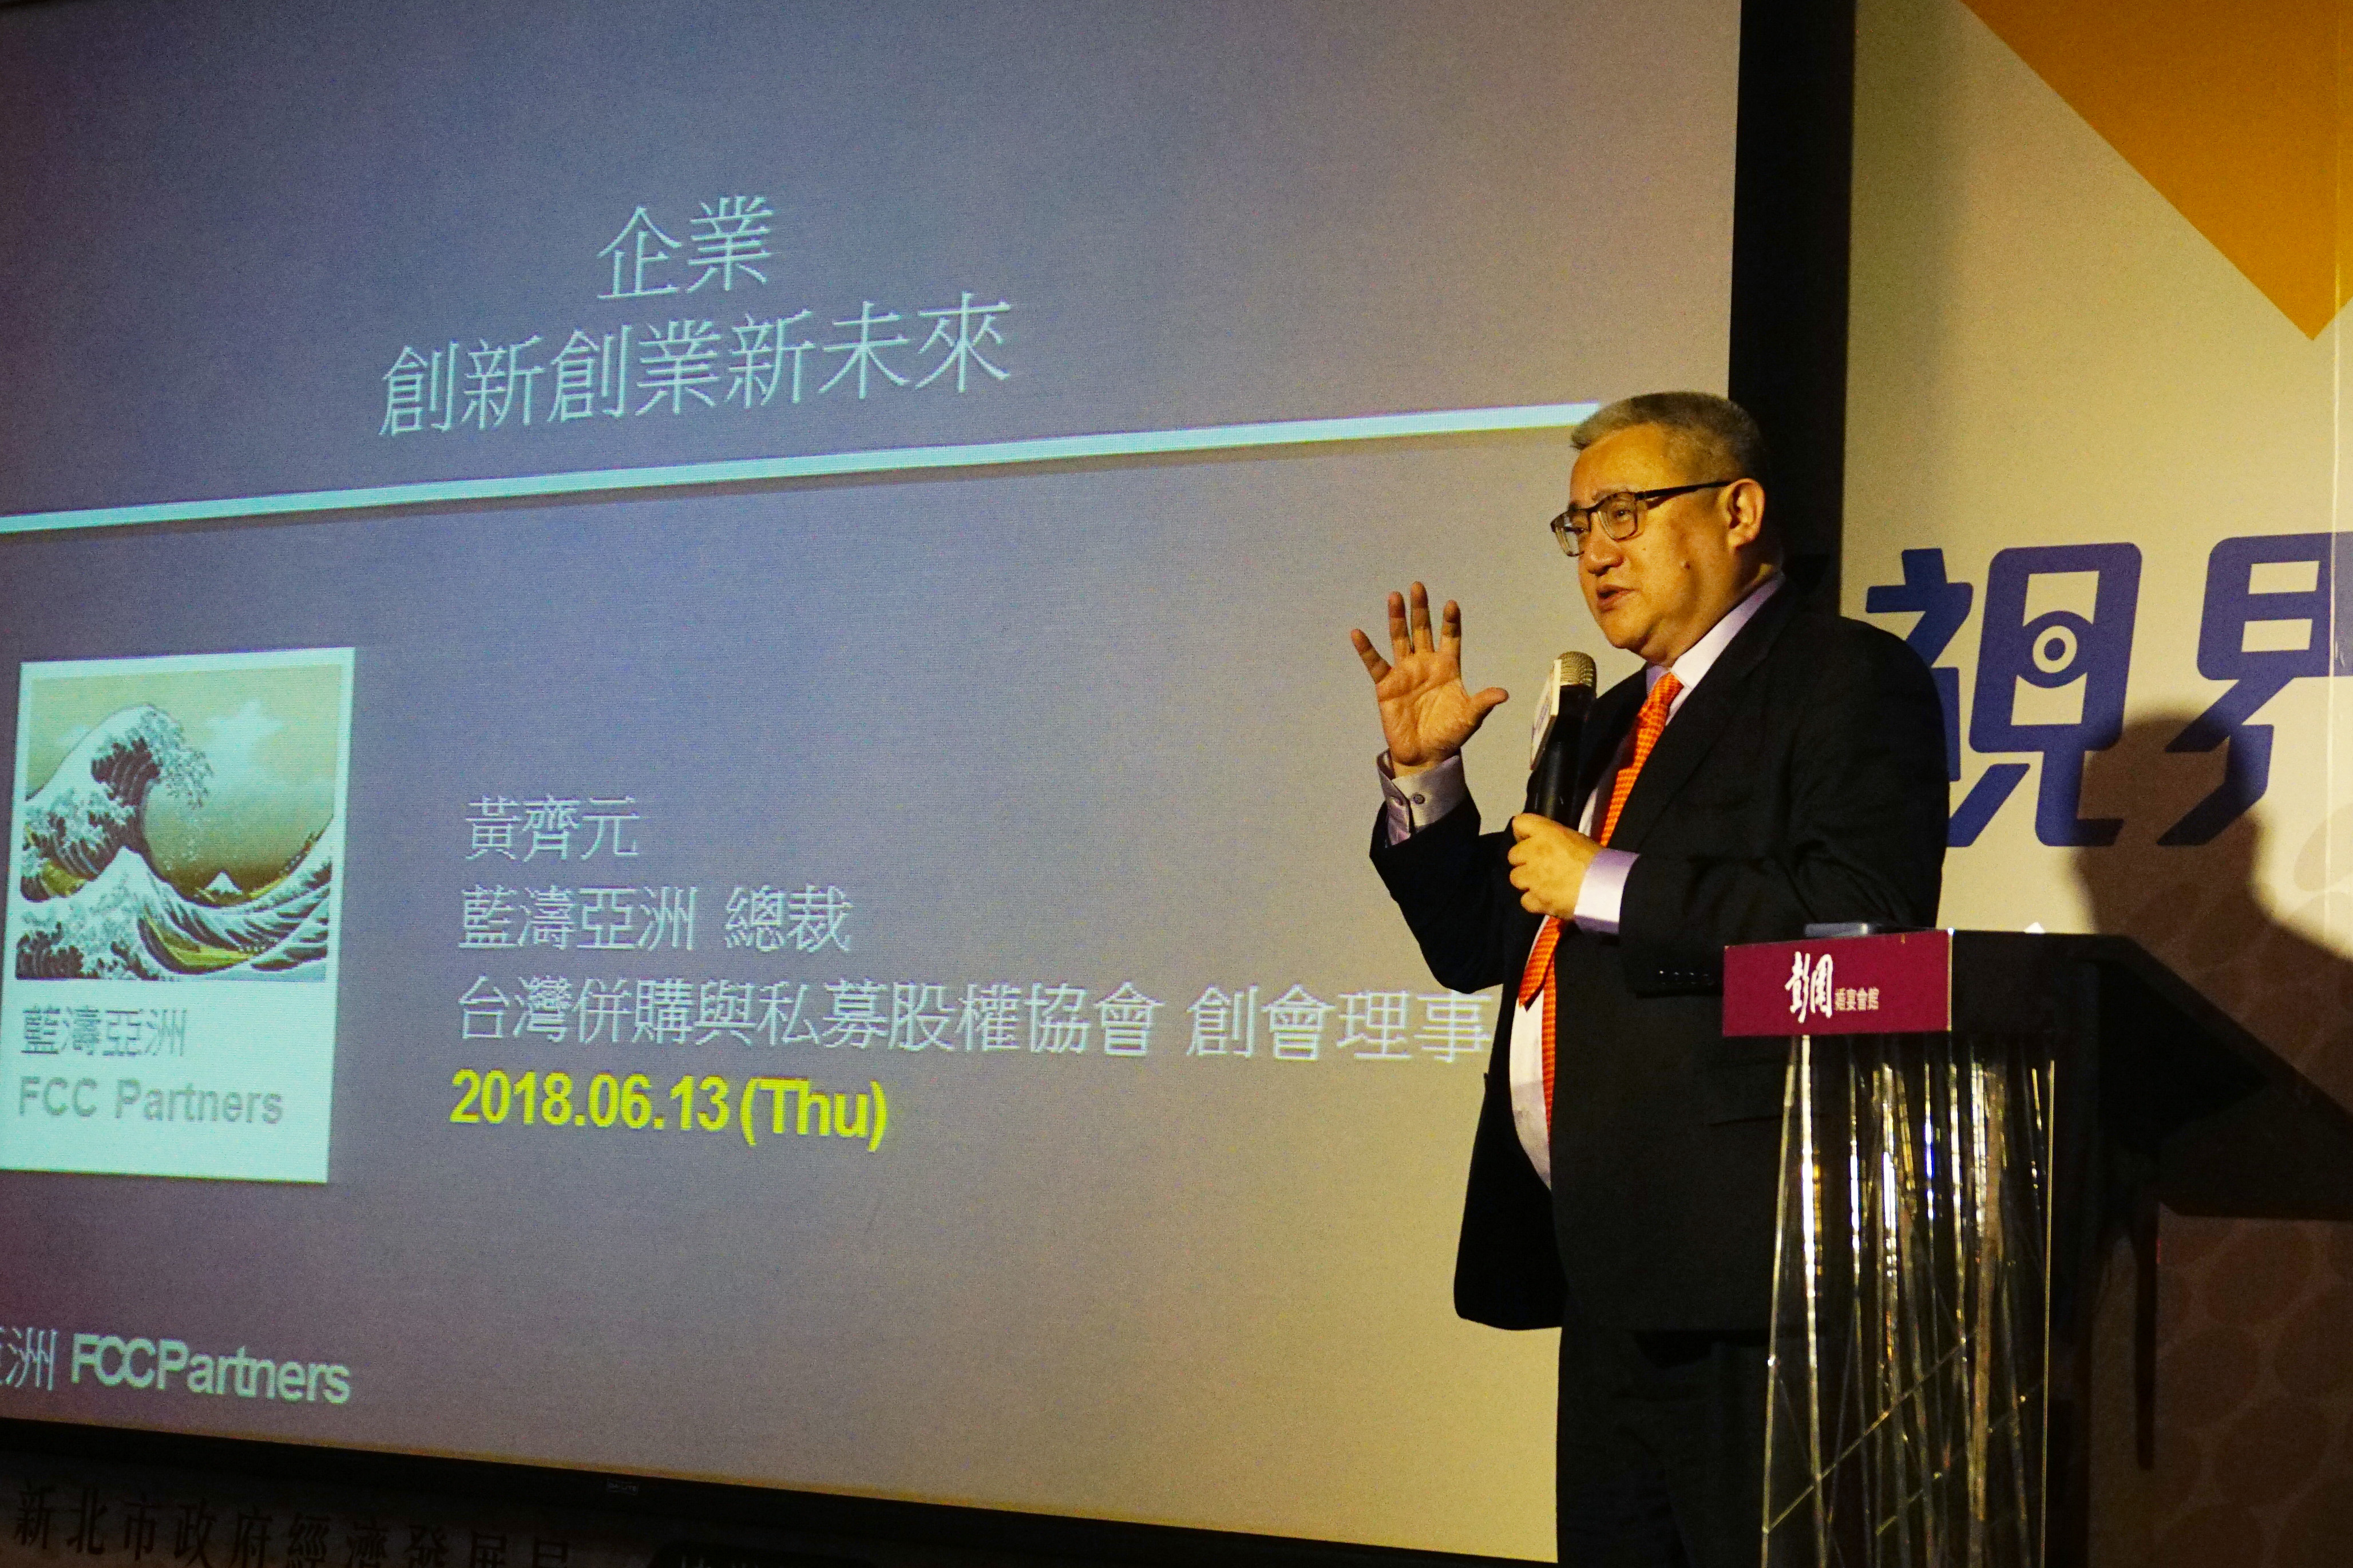 藍濤亞洲總裁黃齊元以「企業創新創業新未來」為題，為企業提出創新管理思維與改革處方